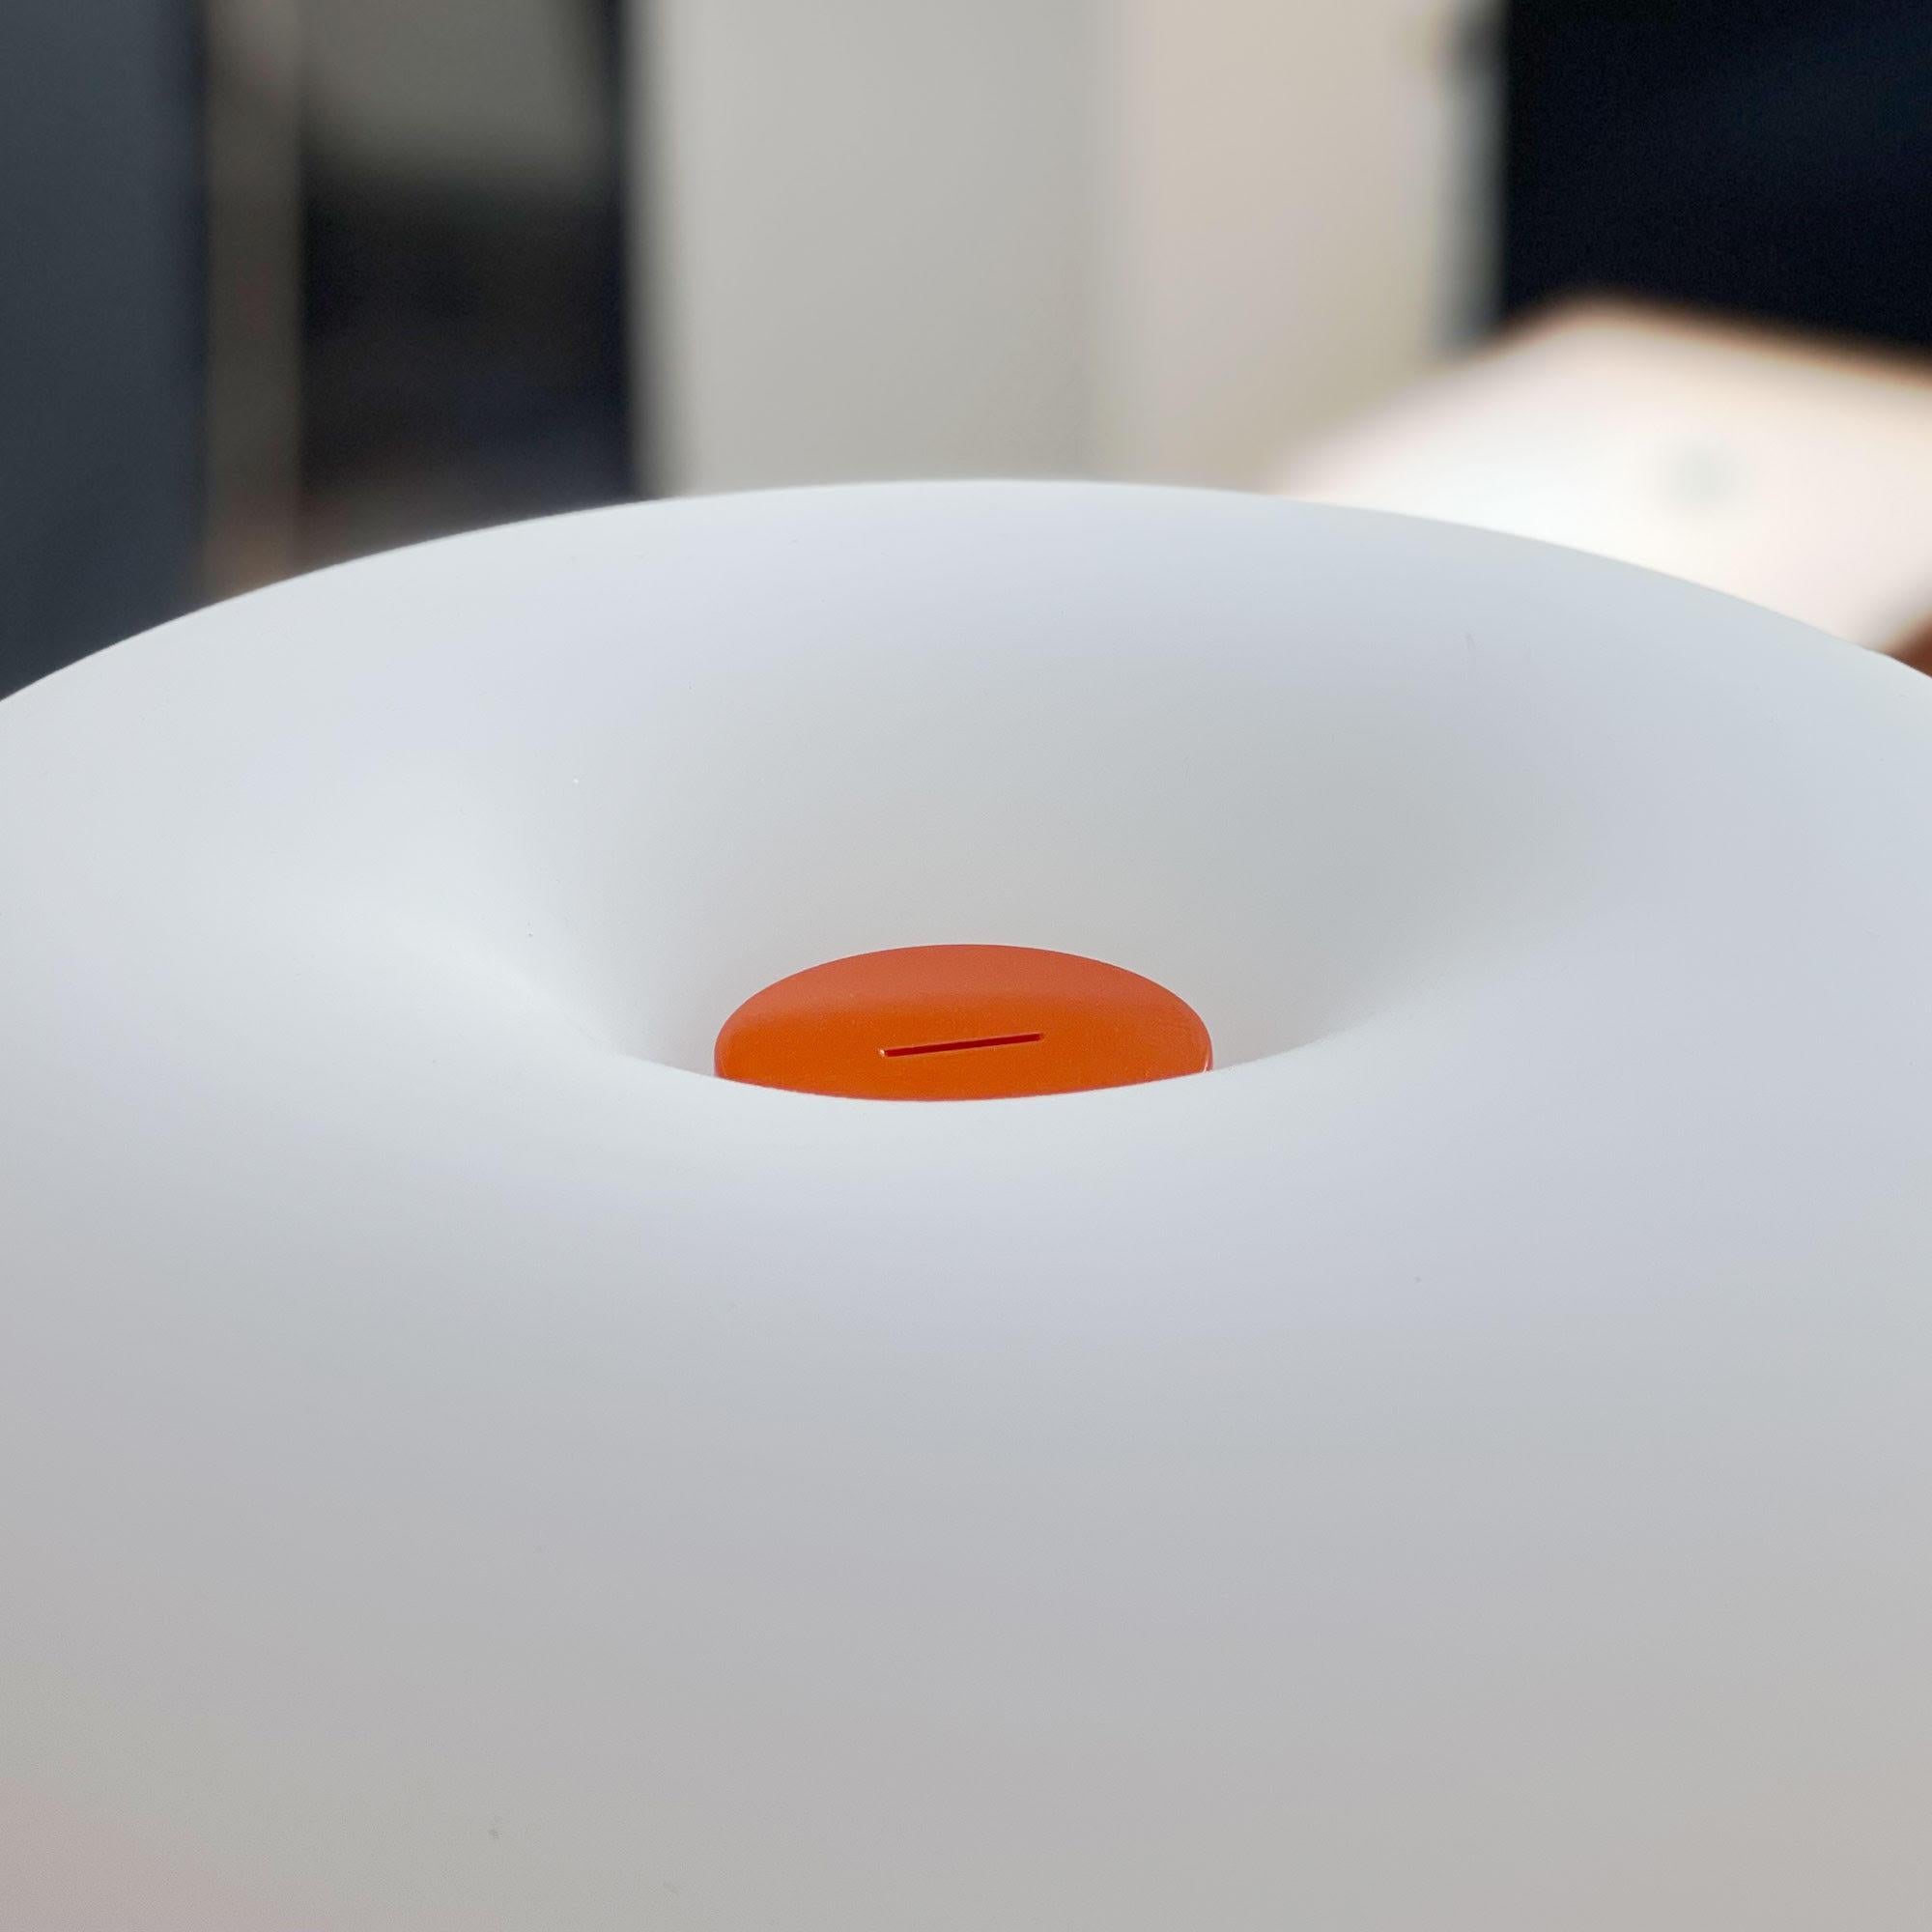 Lampe de table en métal et verre Michel Mortier 10497 pour Disderot en orange.

Conçue à l'origine en 1972, cette lampe de table sculpturale est une nouvelle édition numérotée produite avec un certificat d'authentification. Fabriqué en France par